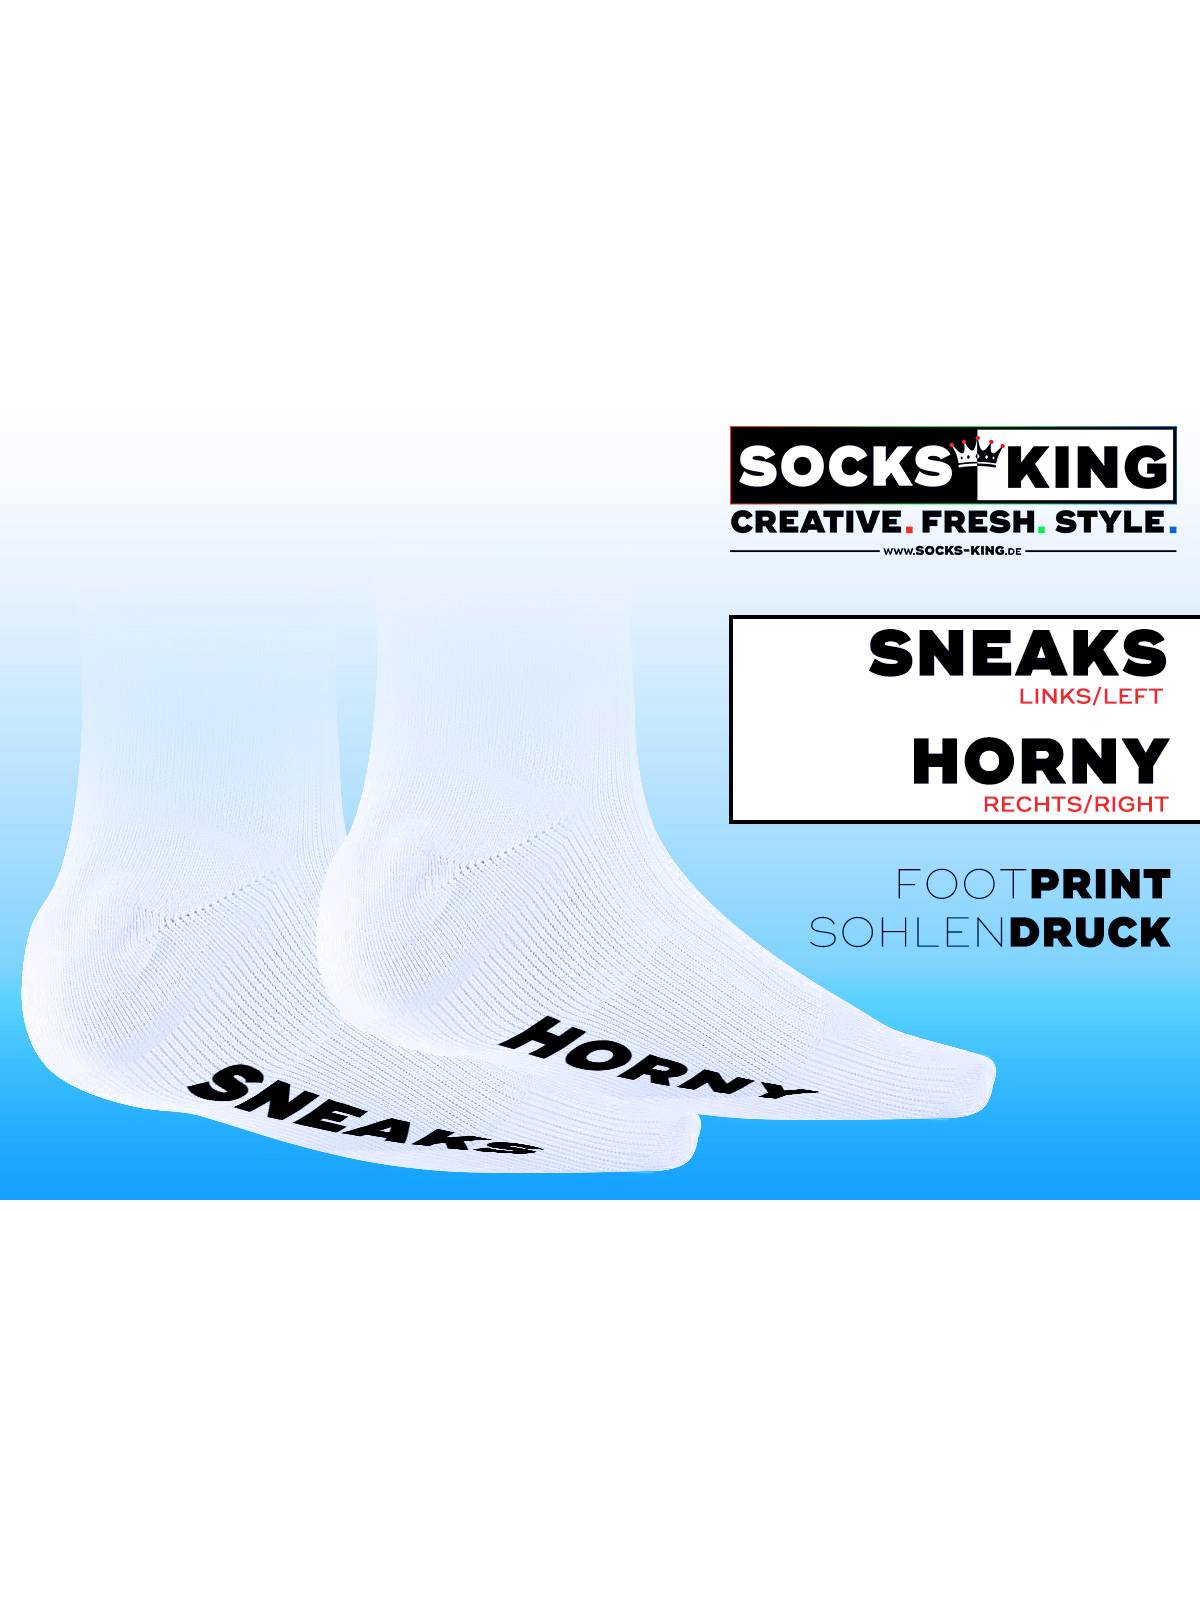 Sneakfreaxx "Sneaks Horny"  Socken